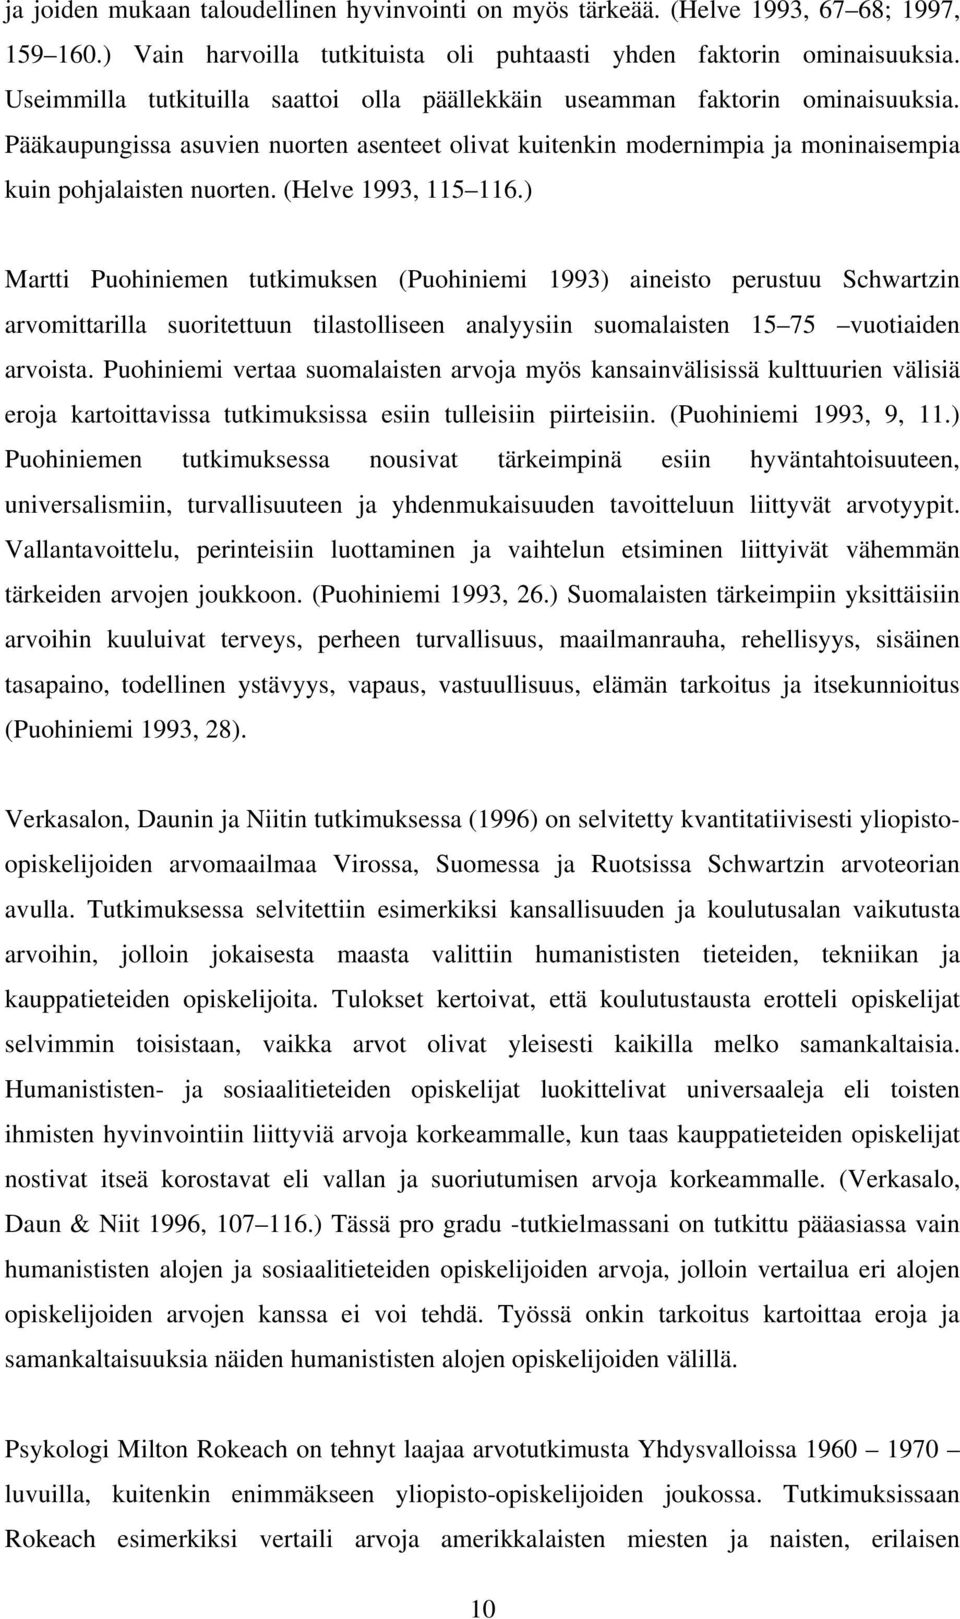 (Helve 1993, 115 116.) Martti Puohiniemen tutkimuksen (Puohiniemi 1993) aineisto perustuu Schwartzin arvomittarilla suoritettuun tilastolliseen analyysiin suomalaisten 15 75 vuotiaiden arvoista.